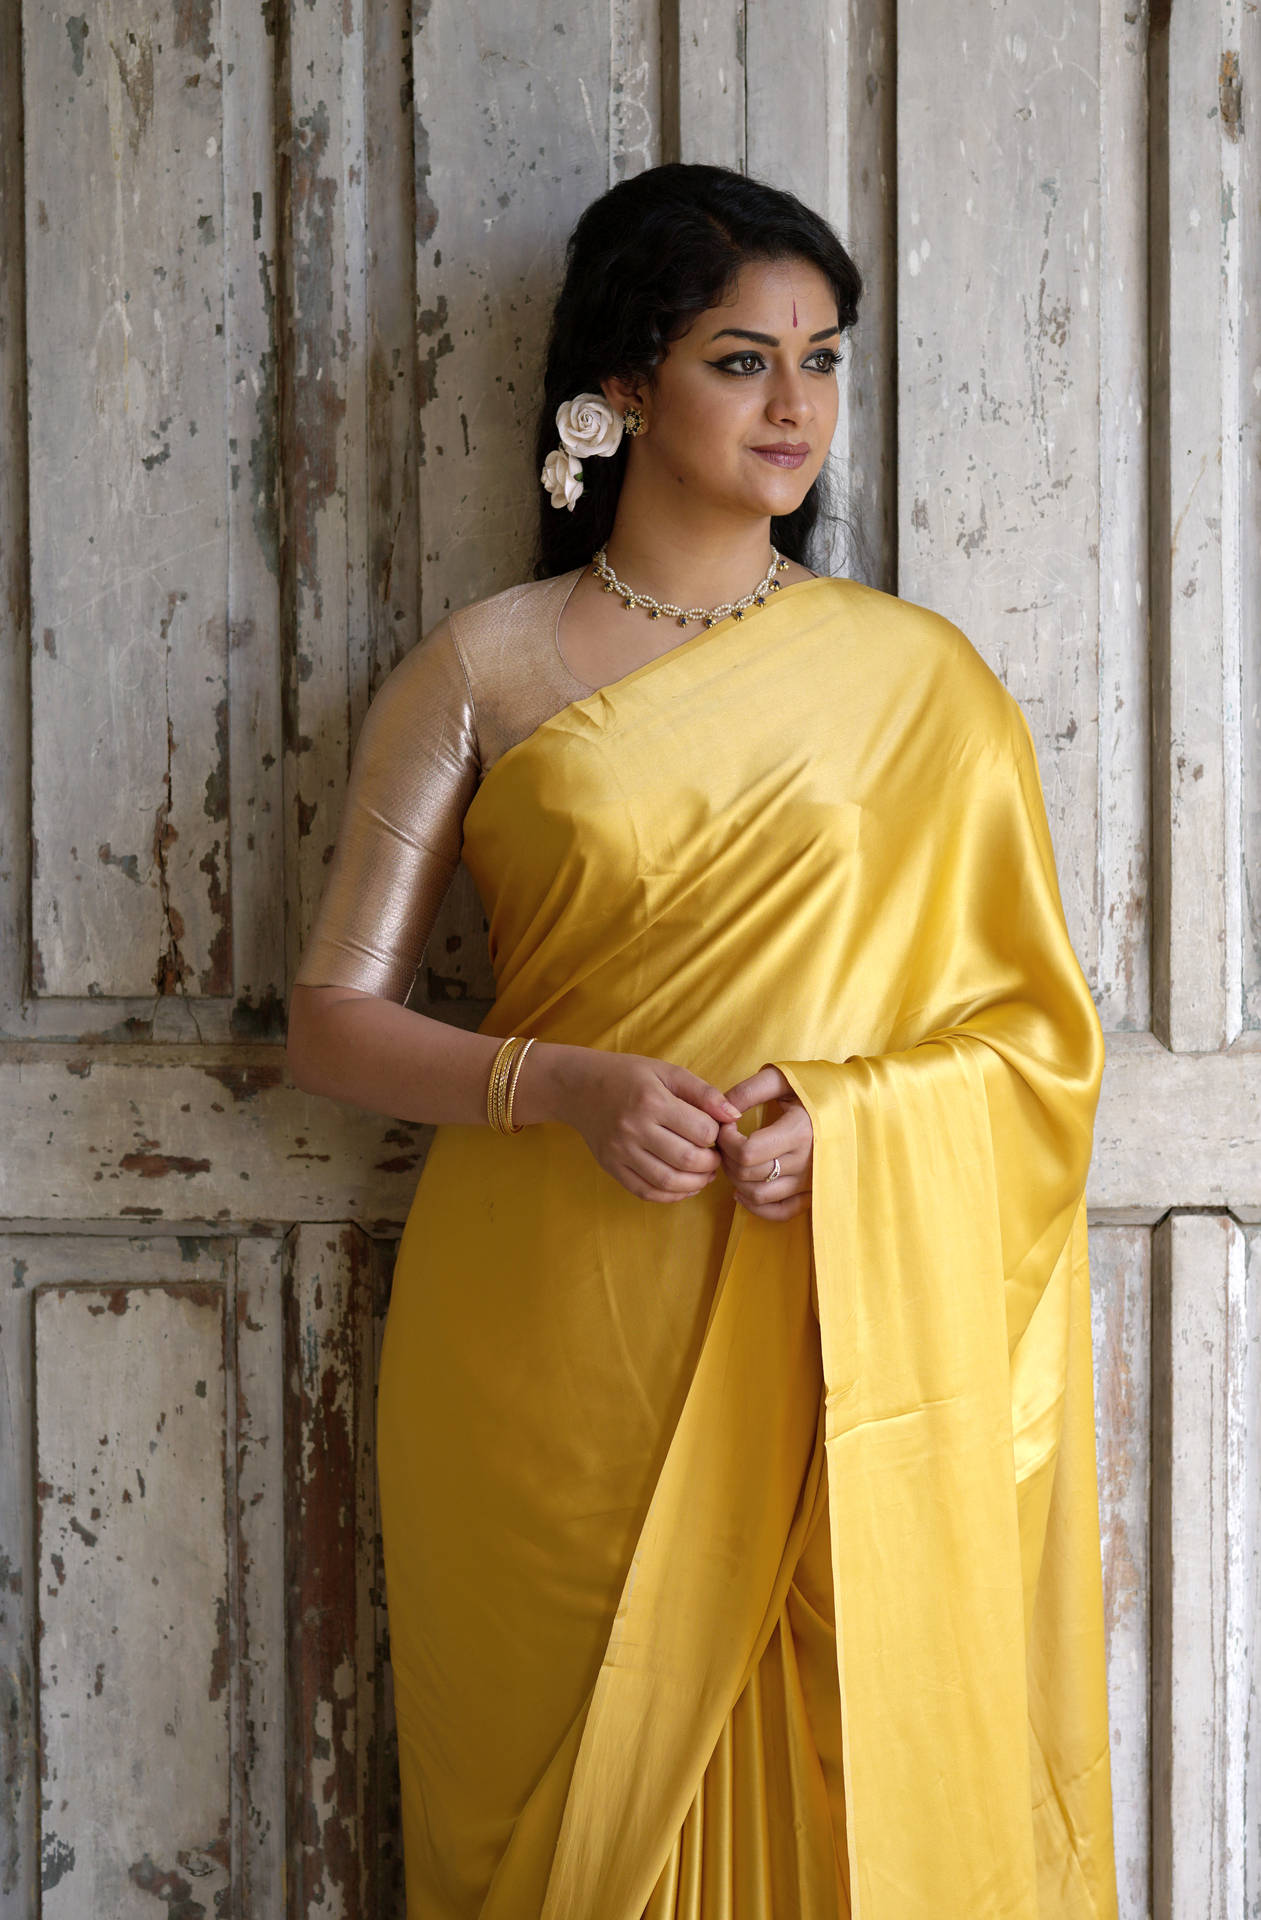 Fundode Tela Dourado Amarelo Com Keerthi Suresh Vestindo Um Sari. Papel de Parede